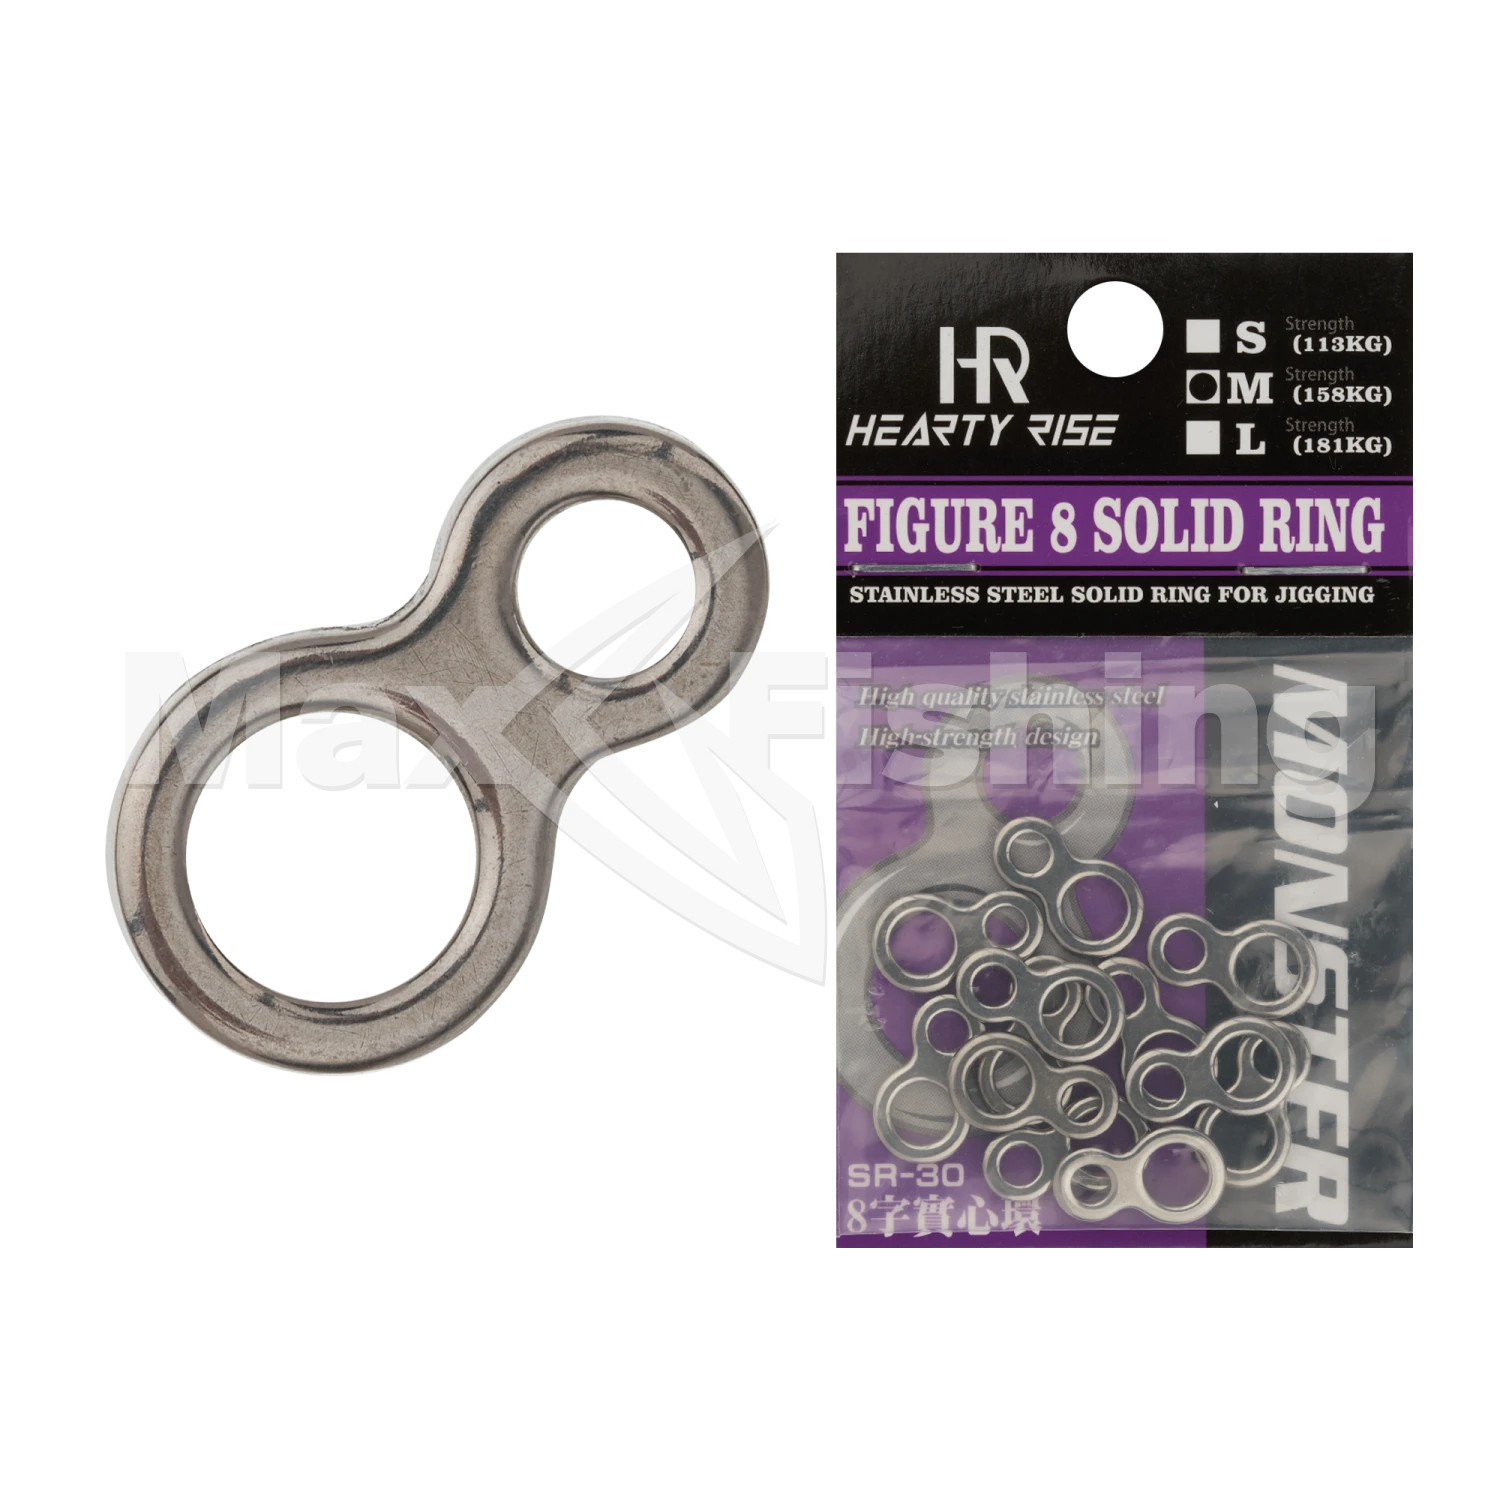 Кольцо соединительное Hearty Rise Monster Figure 8 Solid Ring SR-30 #M